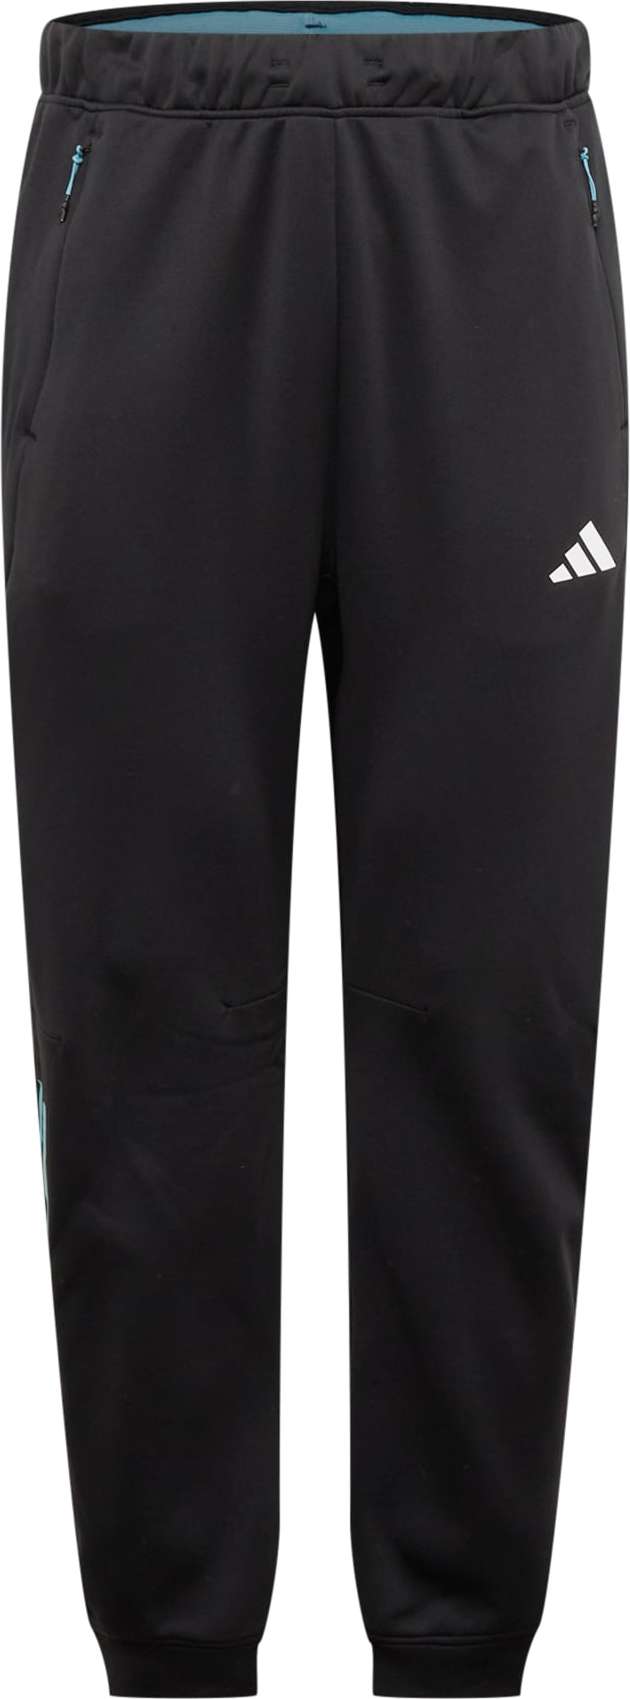 ADIDAS PERFORMANCE Sportovní kalhoty azurová modrá / ohnivá červená / černá / bílá